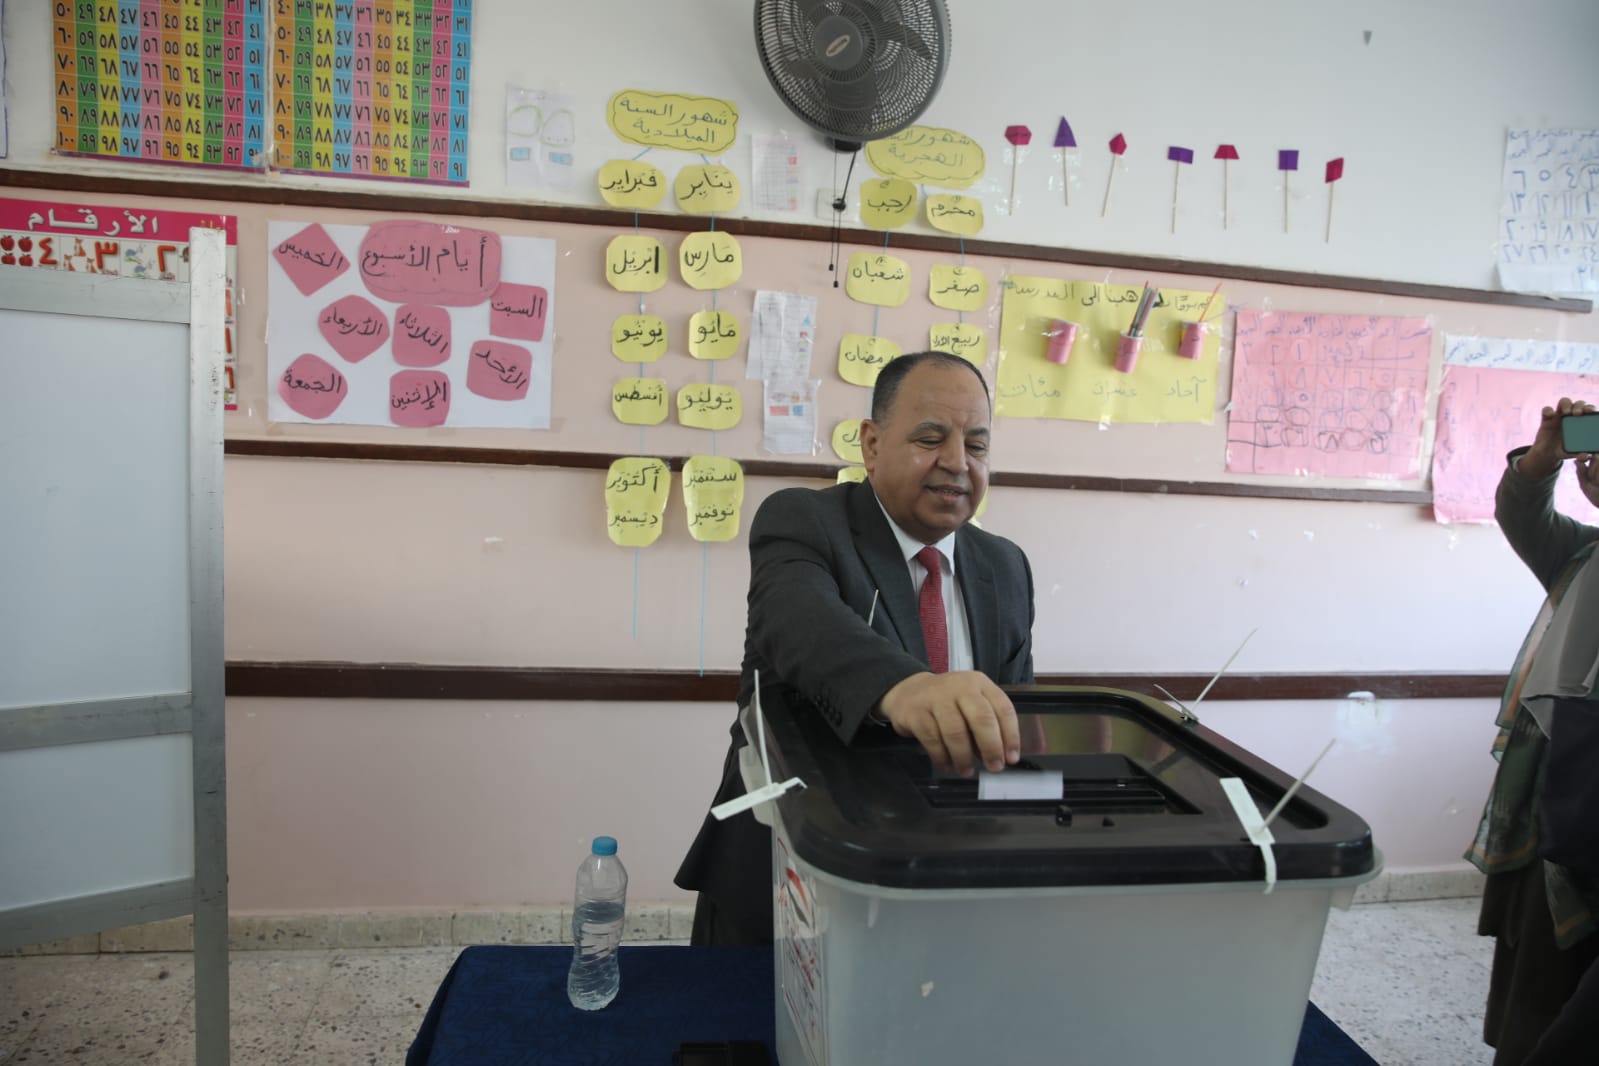 وزير المالية عقب الإدلاء بصوته في الانتخابات الرئاسية: المصريون يكتبون تاريخًا في الممارسة الديمقراطية